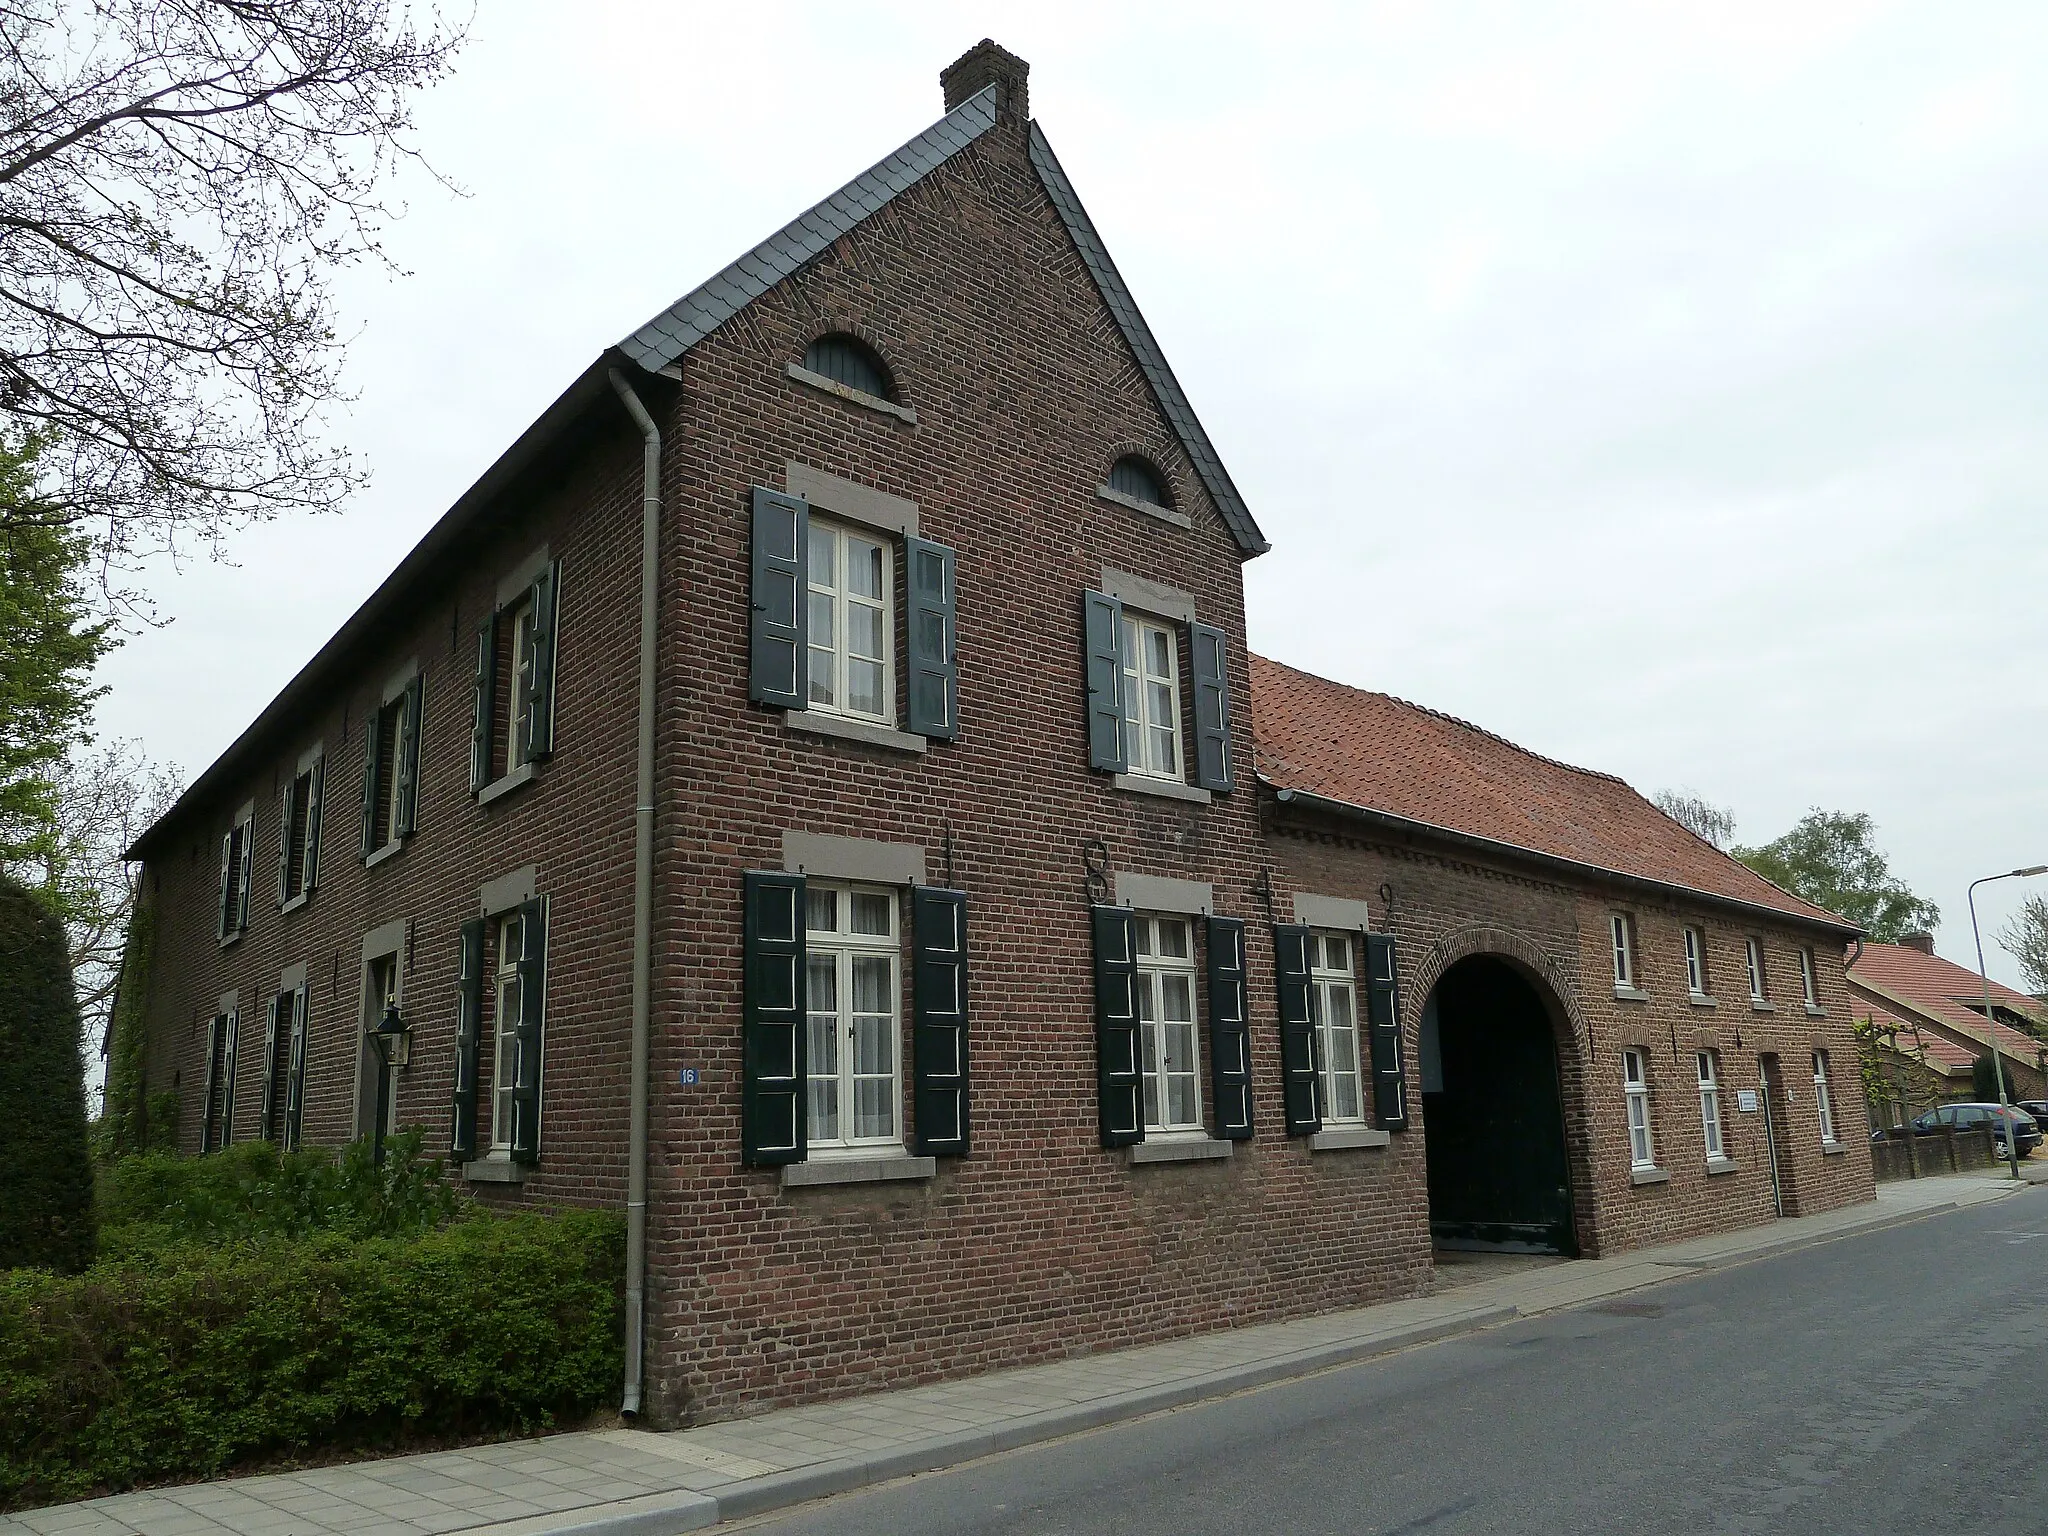 Bild von Limburg (NL)